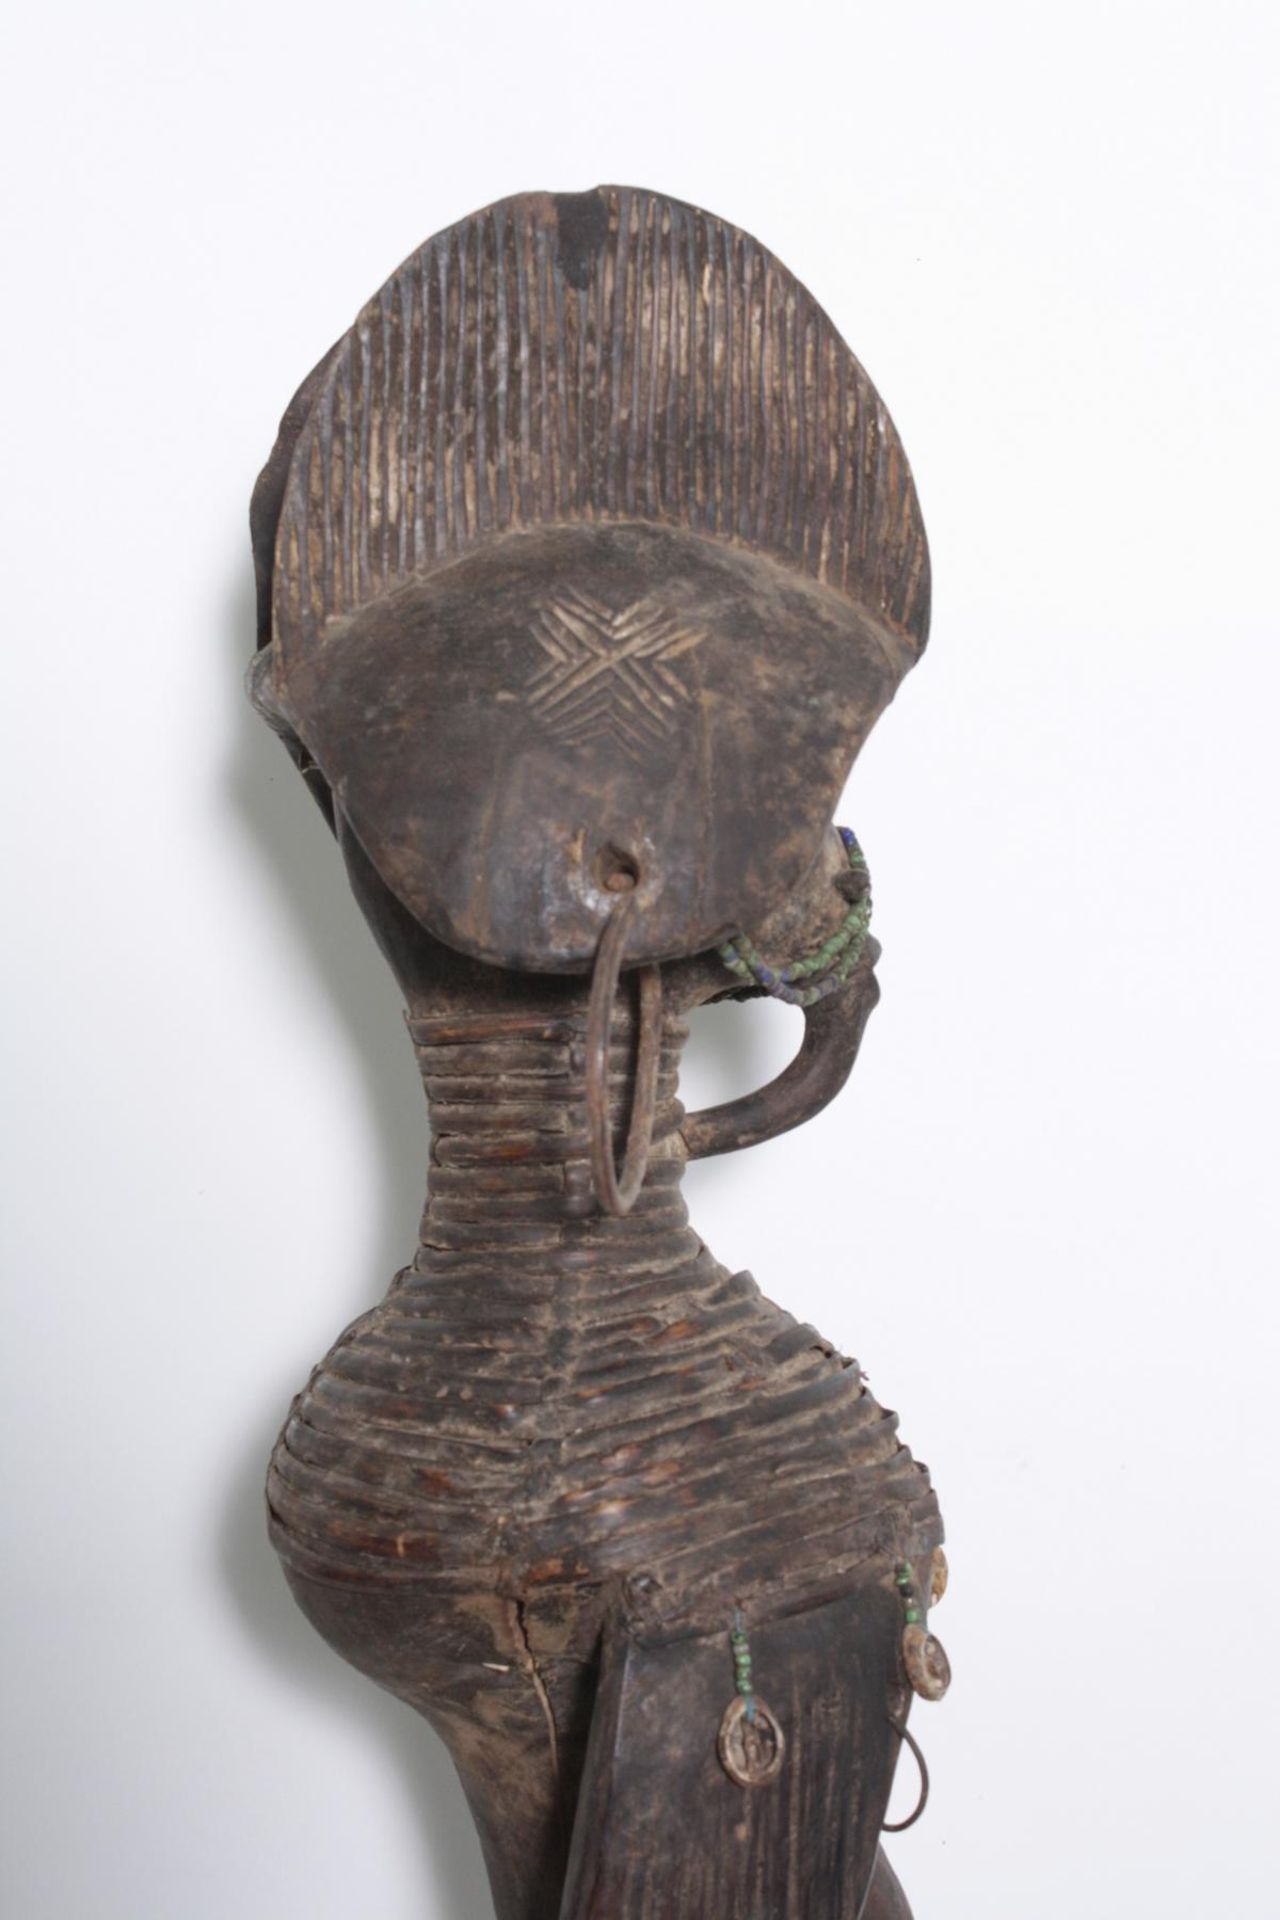 Ritualfigur der Mumuye, "Iagalagana", Nigeria. 1. Hälfte 20. Jh.Holz geschnitzt, dunkelbraune Patina - Bild 7 aus 15